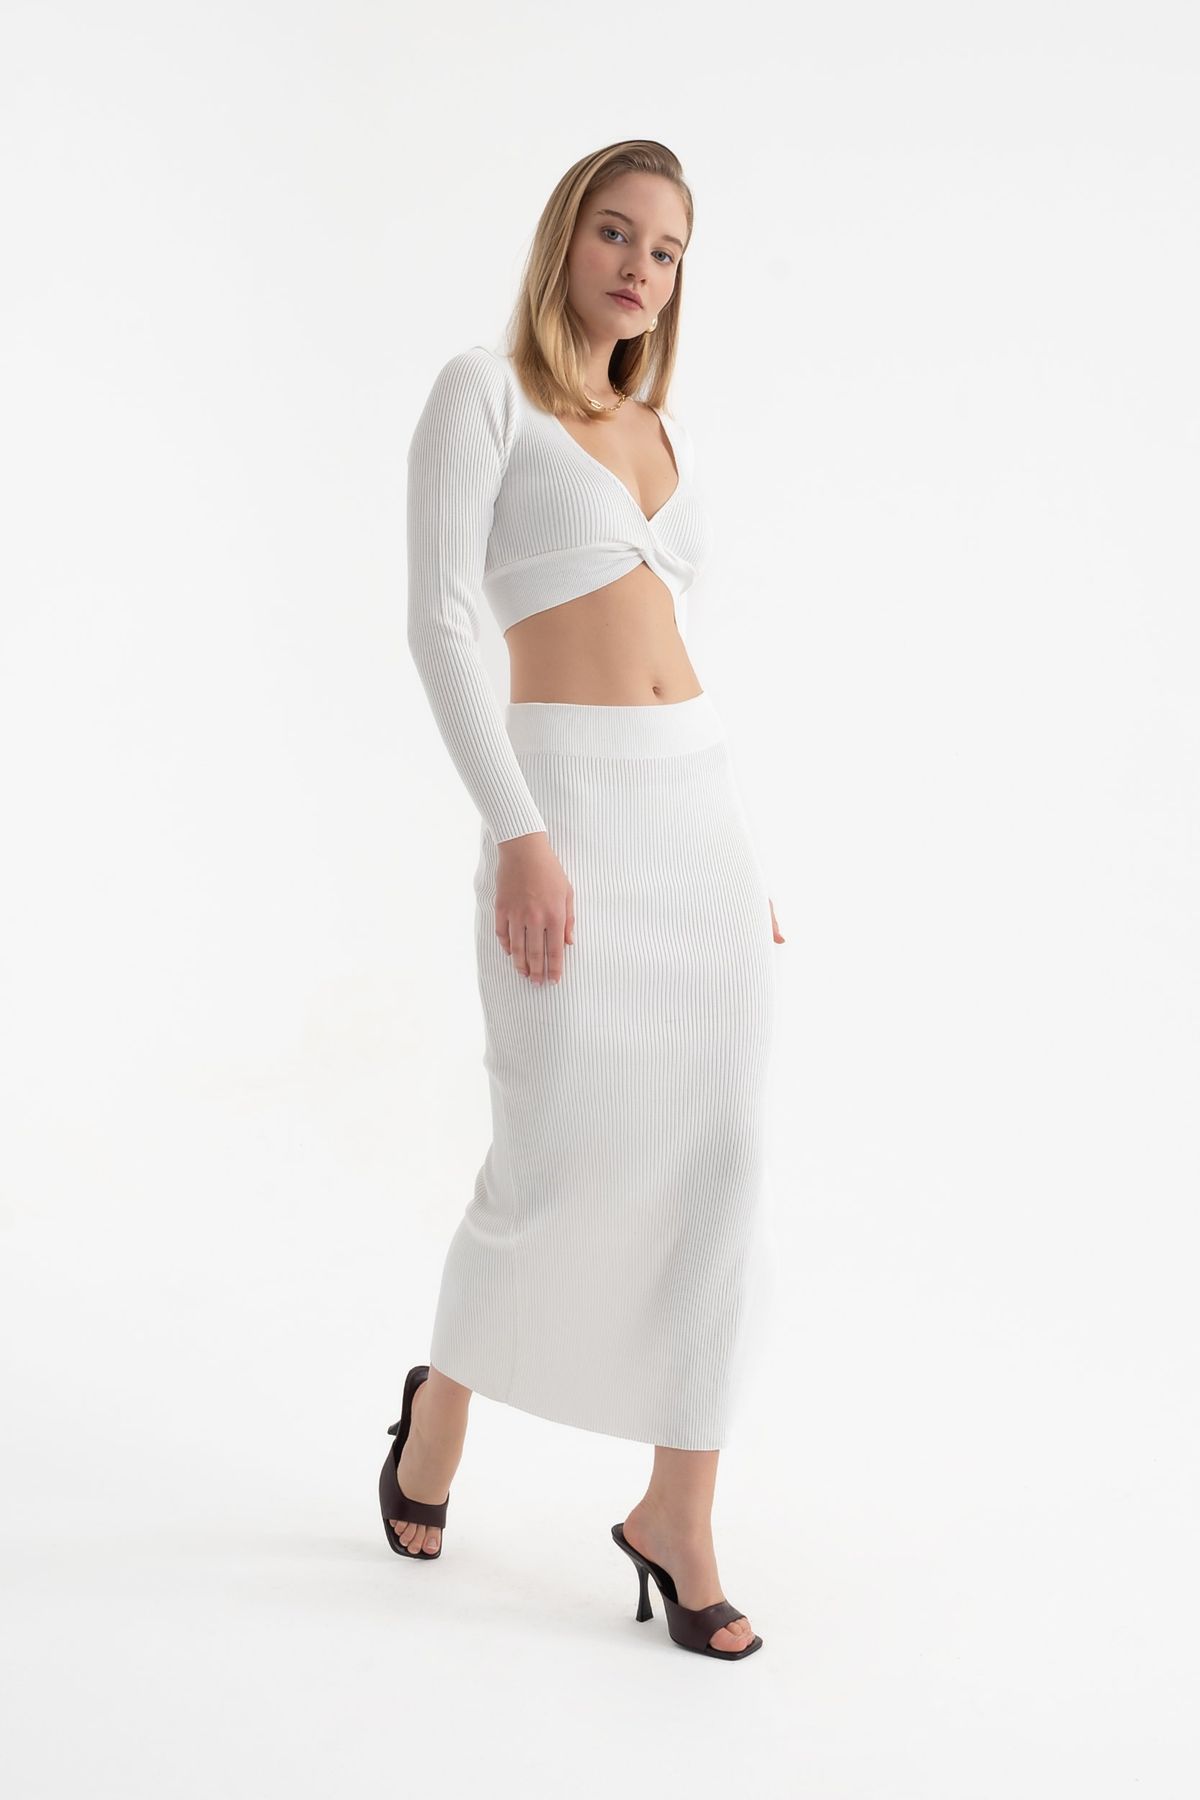 2 Pieces: V Neck Long Sleeve Crop Top & High Waist Slit Maxi Skirt